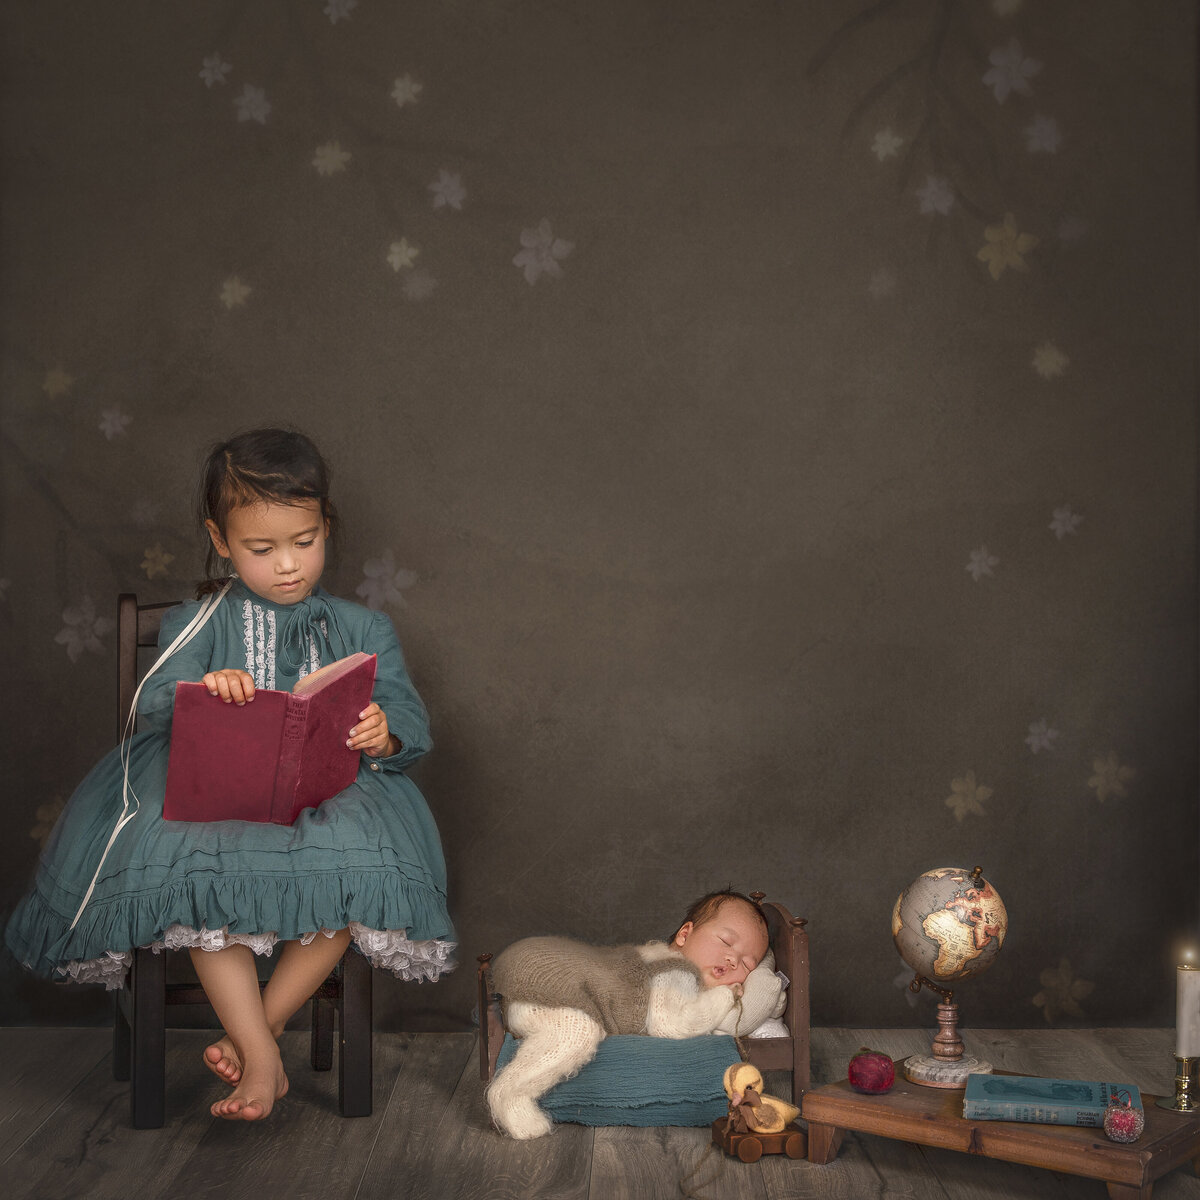 creative newborn and sibling portrait during newborn photo  shoot in ottawa Ontario